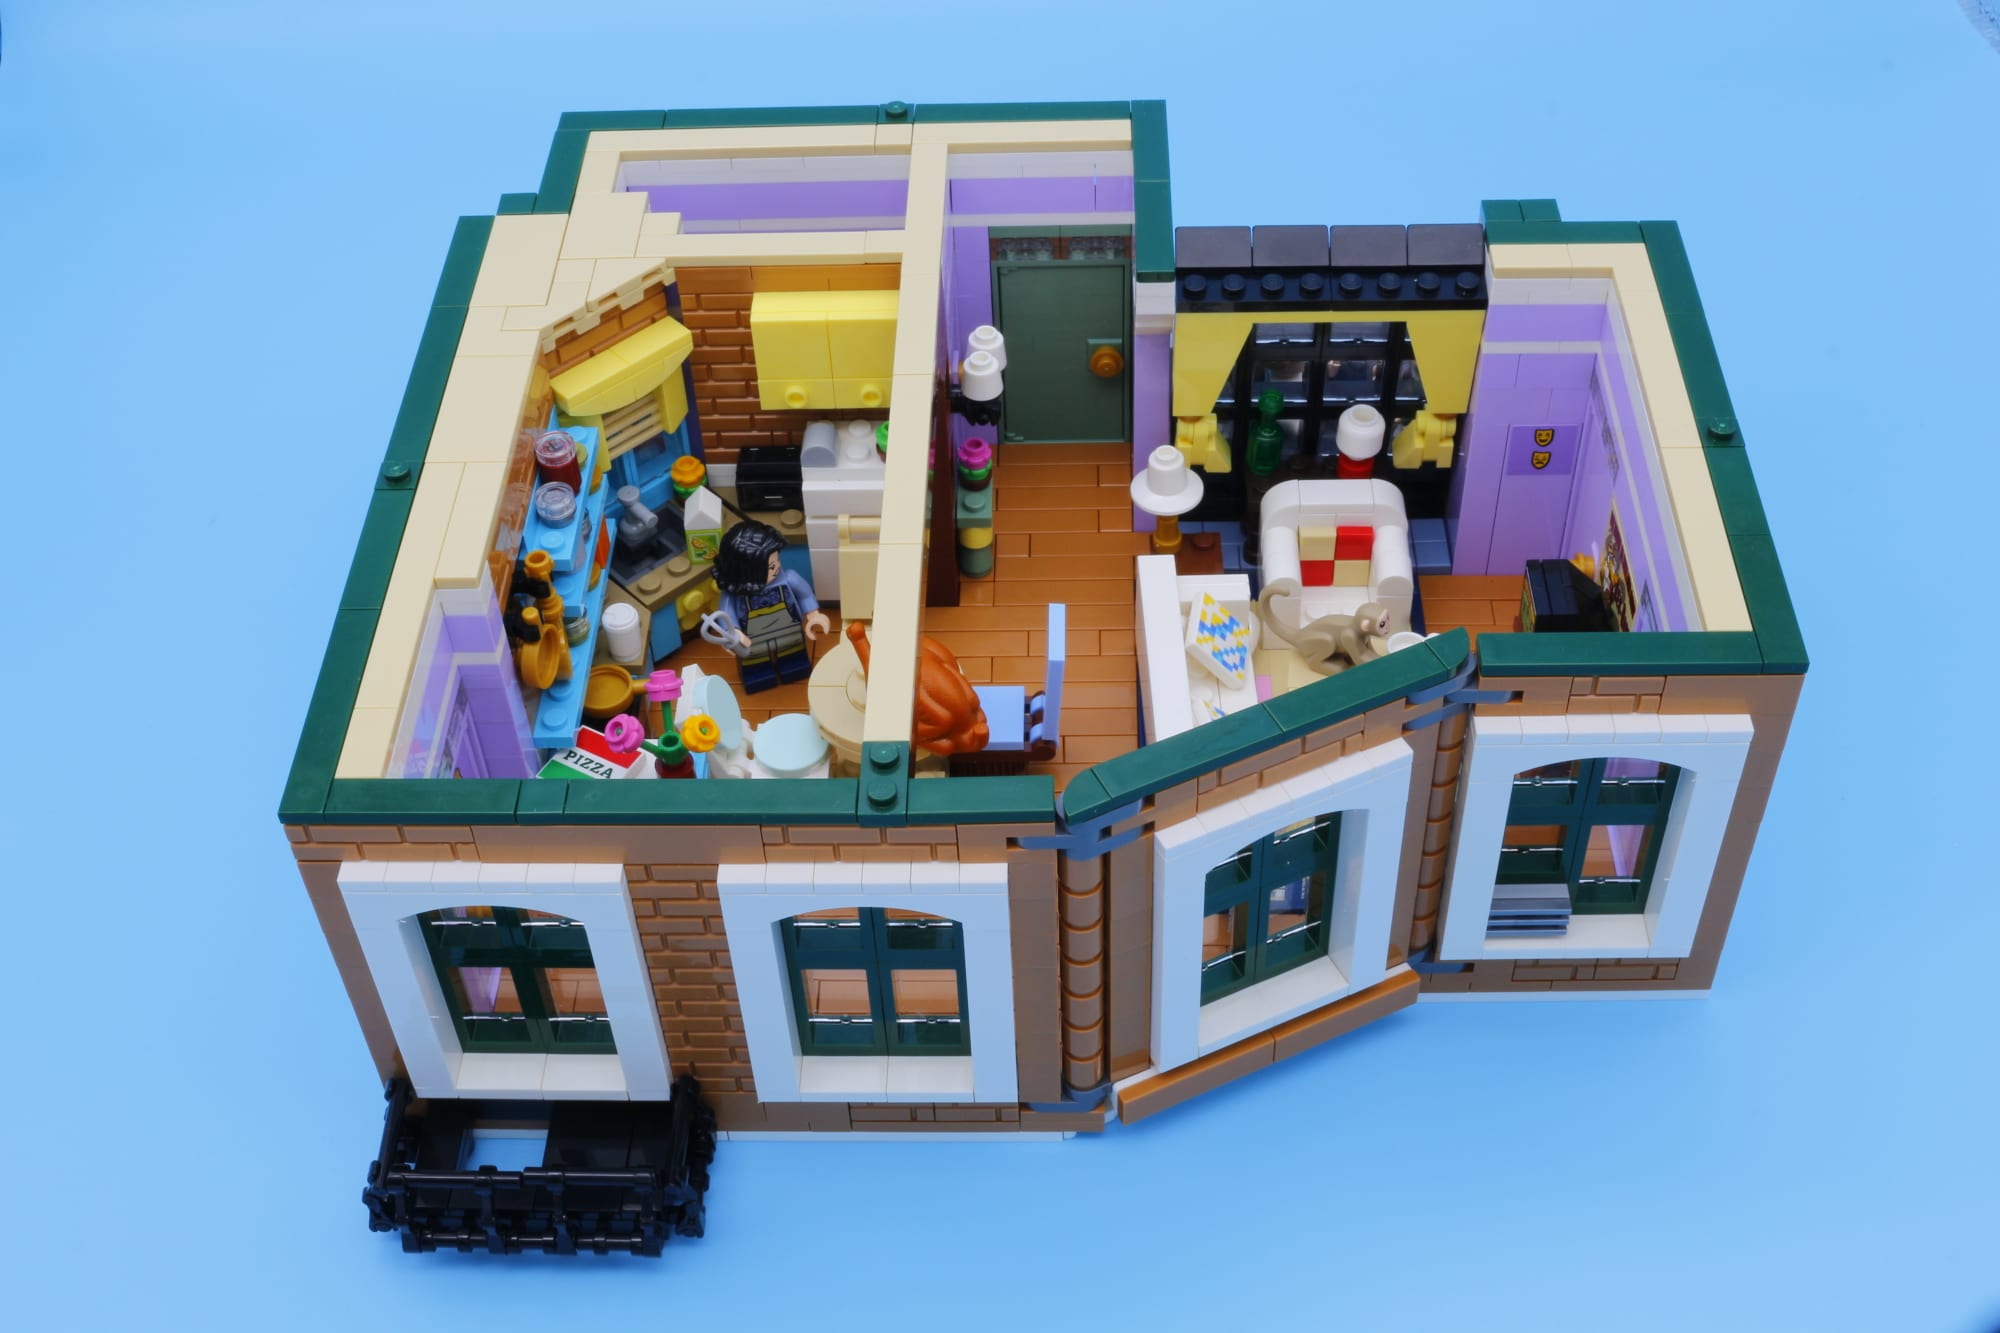 LEGO Central Perk Modular Moc 16